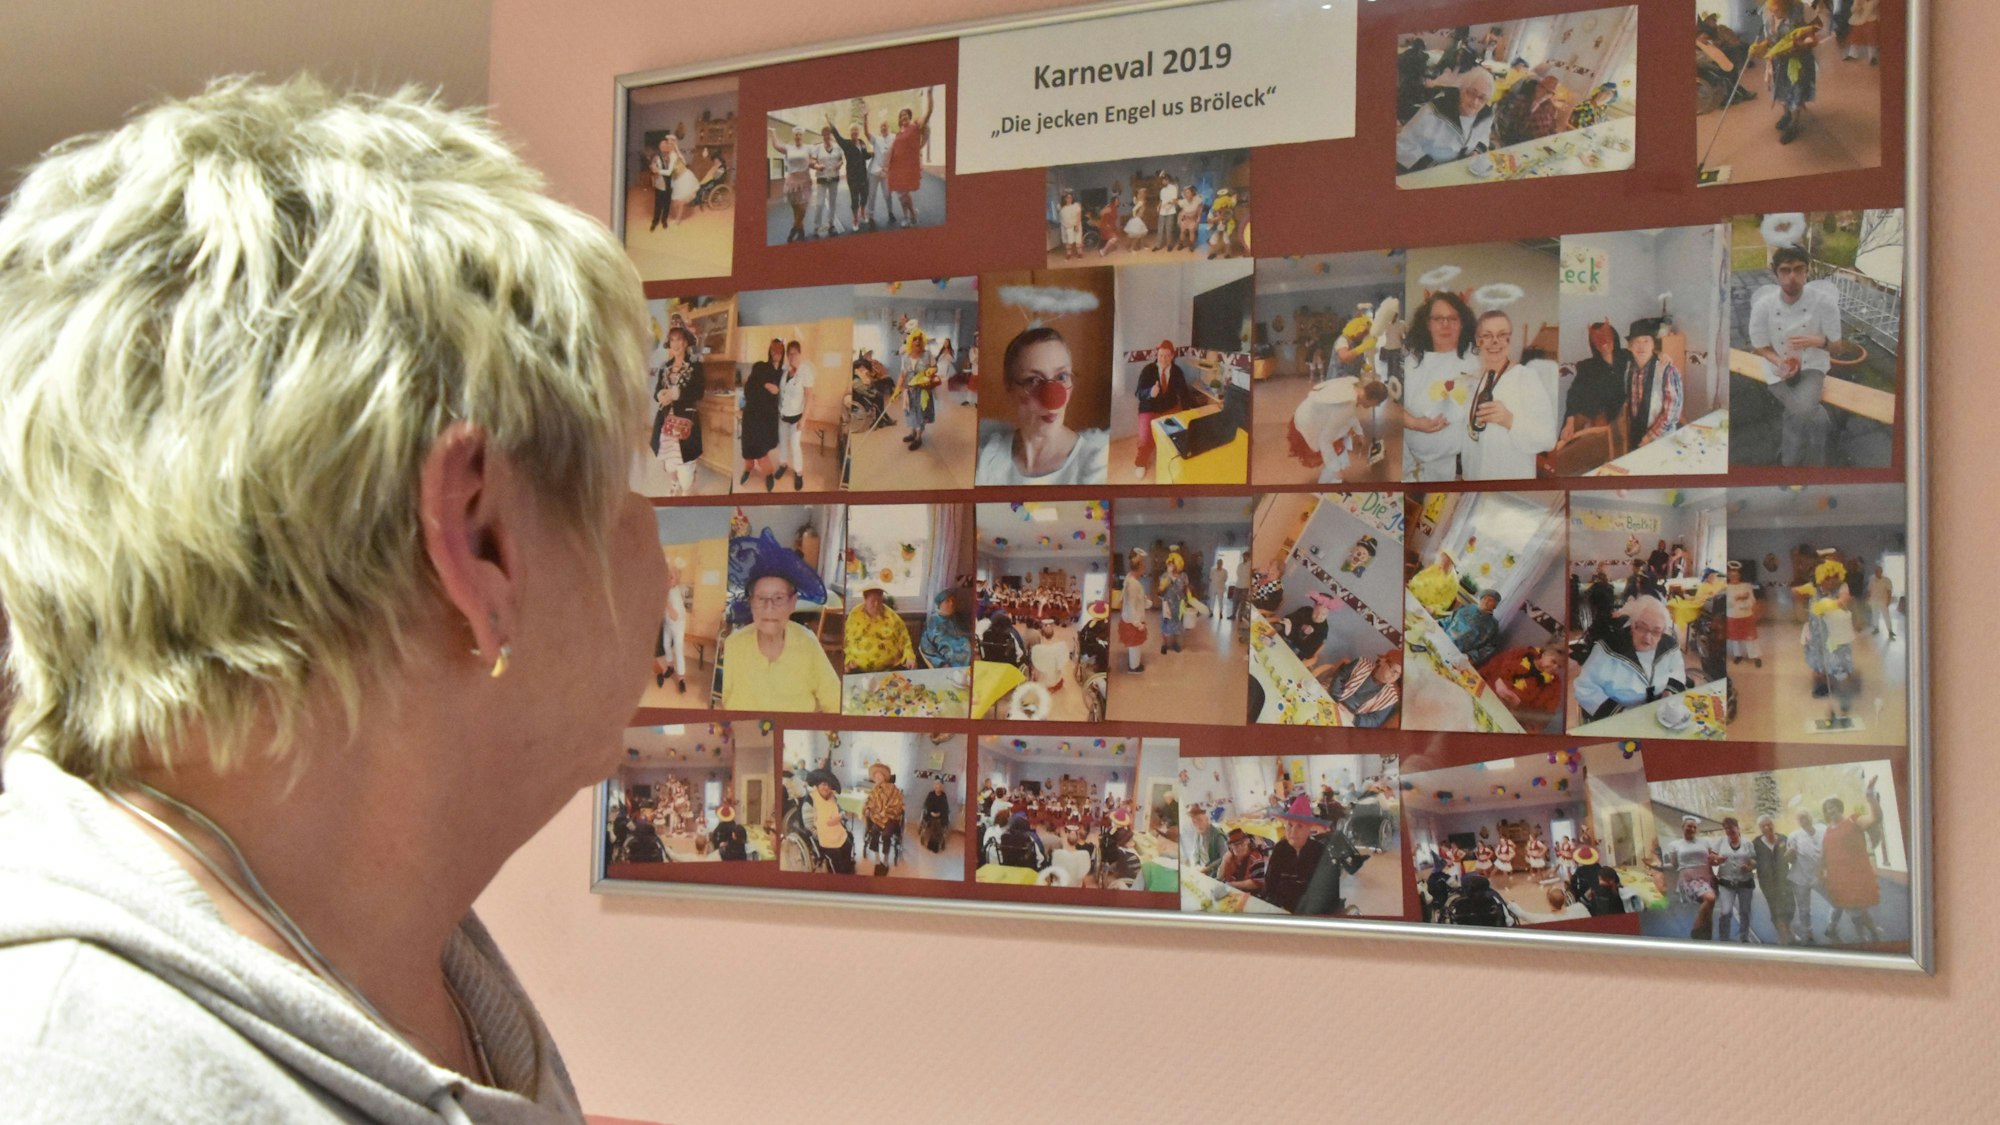 Eine Frau schaut auf eine Fotocollage an der Wand, mit Bildern von Personal und Bewohnern bei Feierlichkeiten.